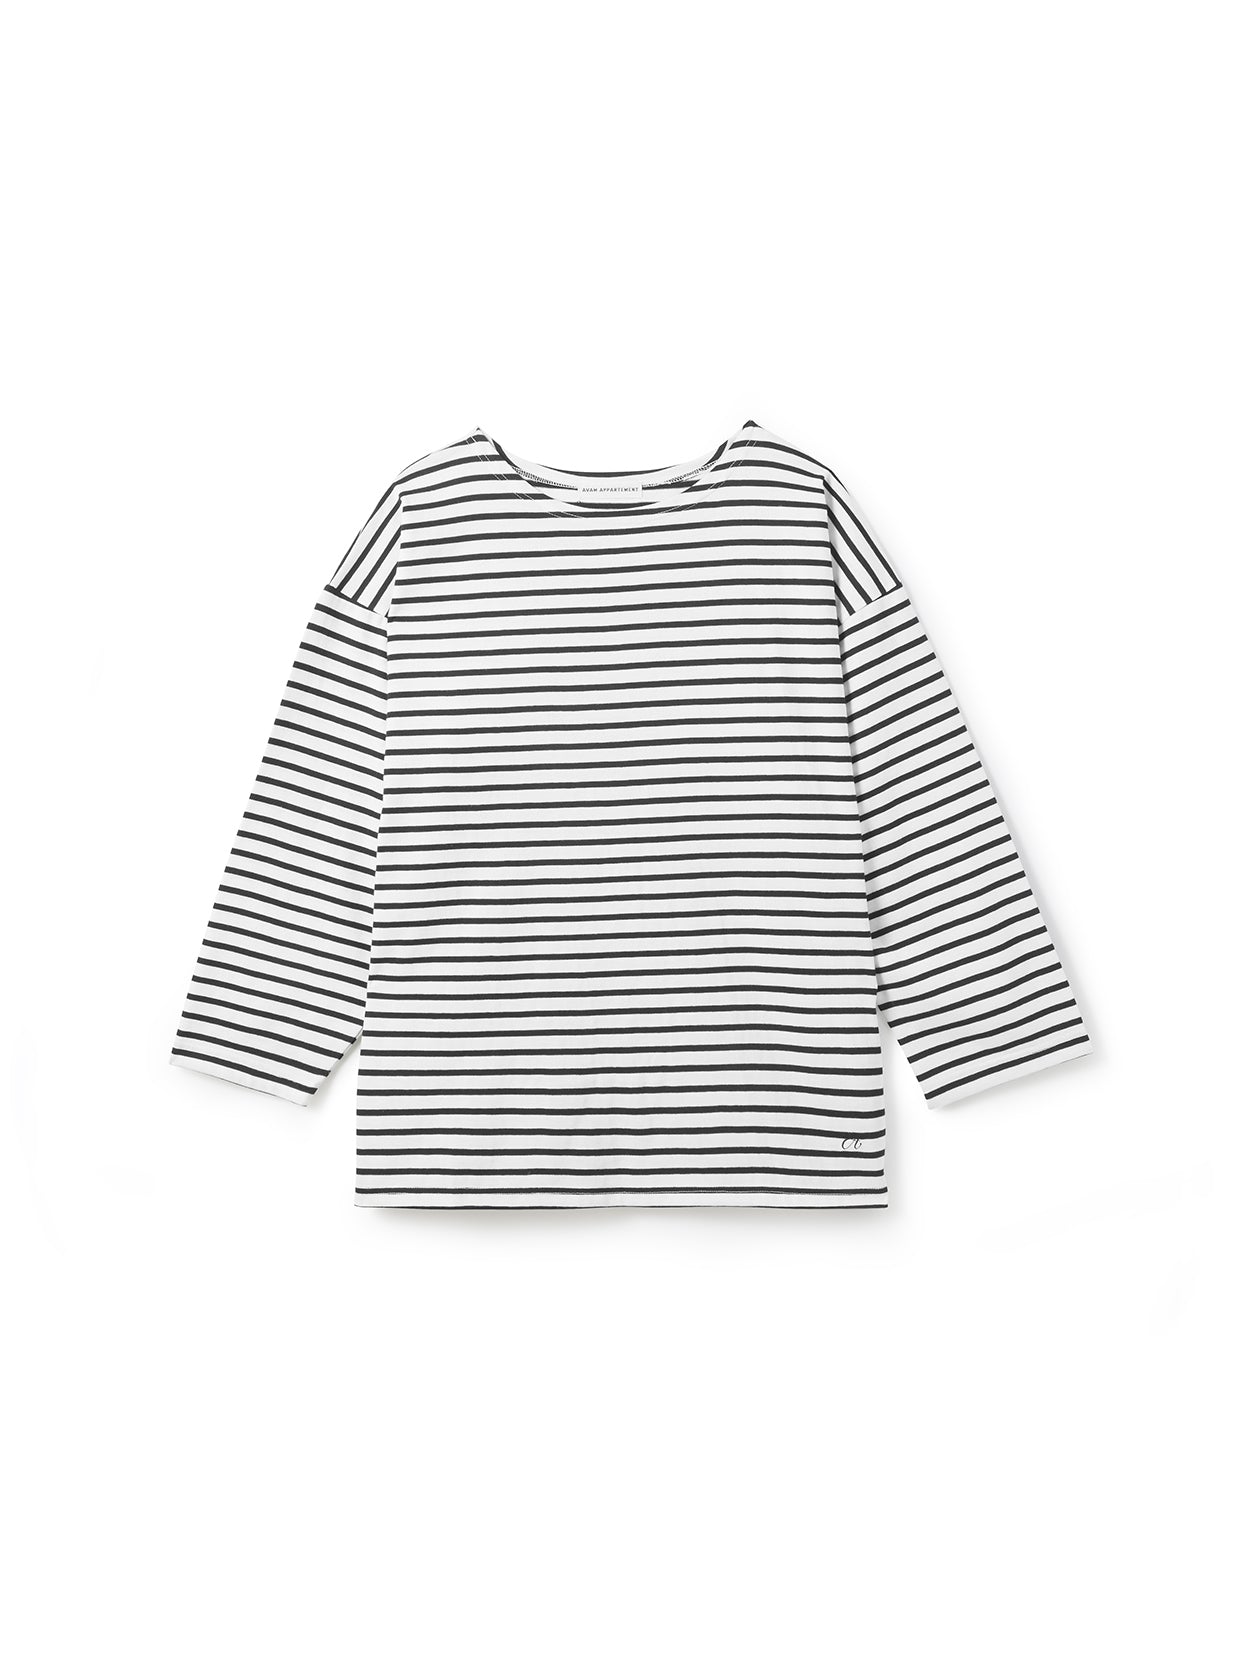 AVAM Stripe T-Shirt